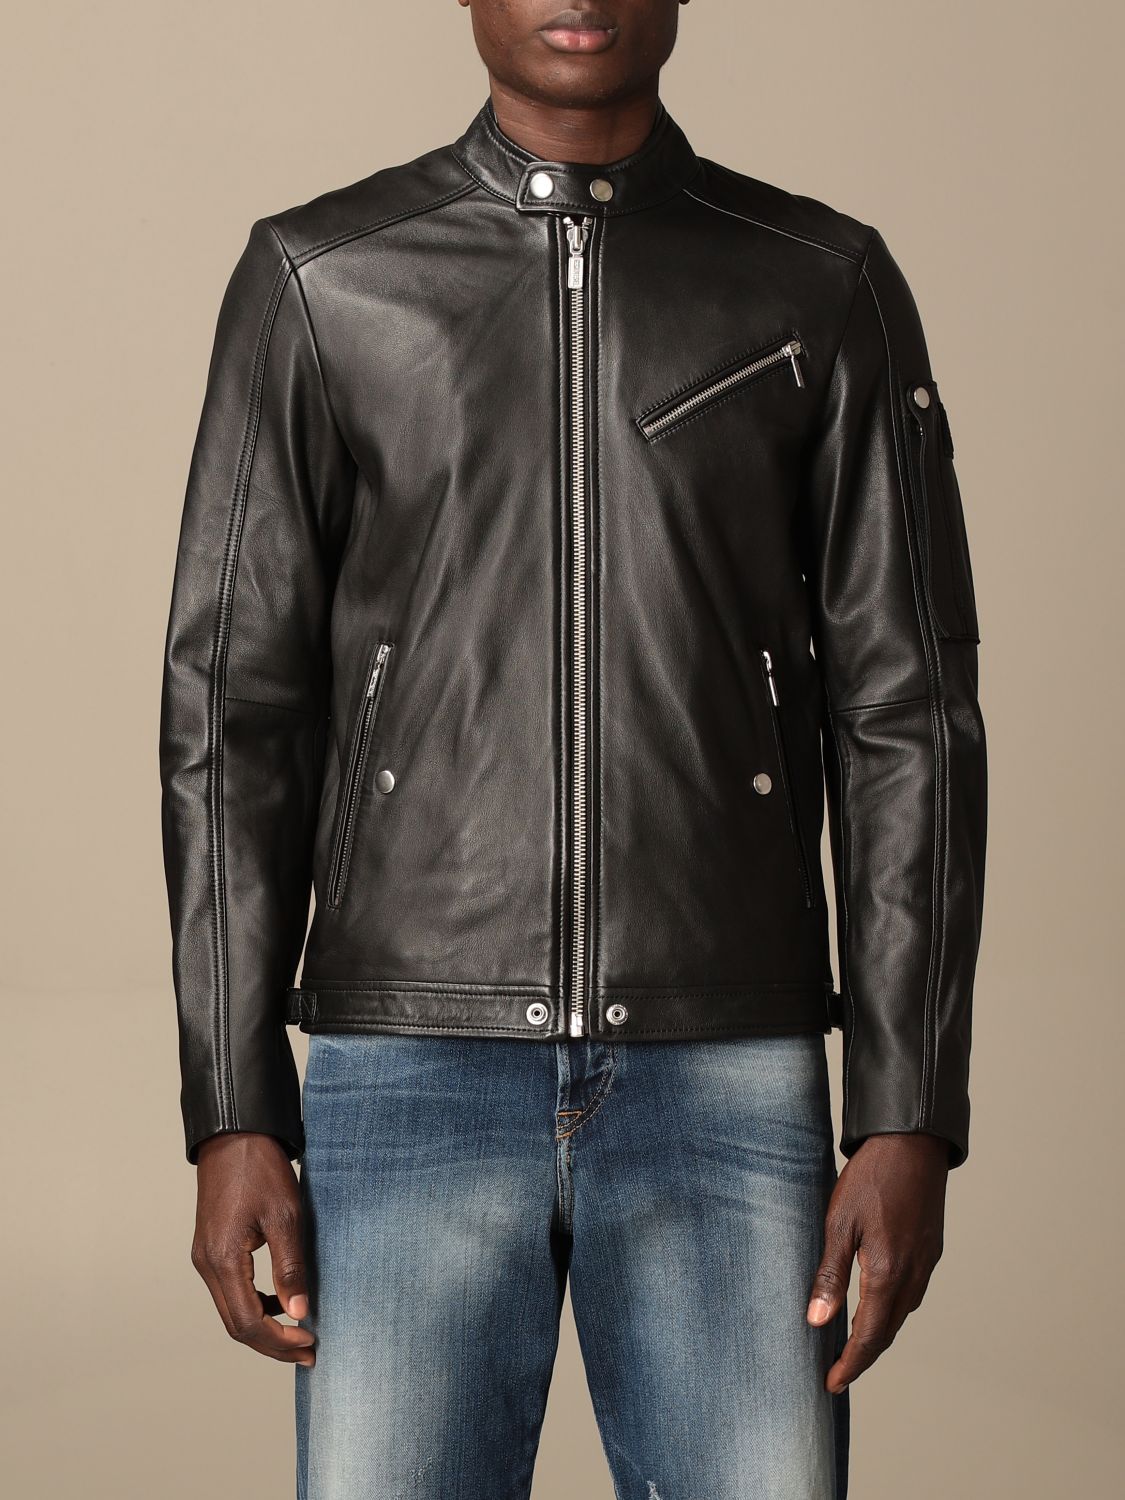 DIESEL: leather jacket with zip - Black | Diesel A00270 0JAYE online at GIGLIO.COM